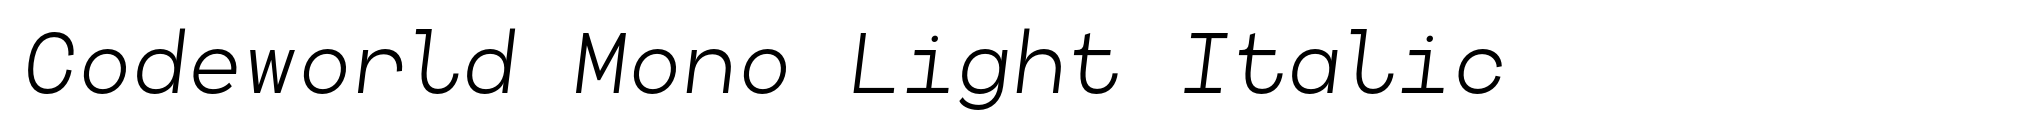 Codeworld Mono Light Italic image